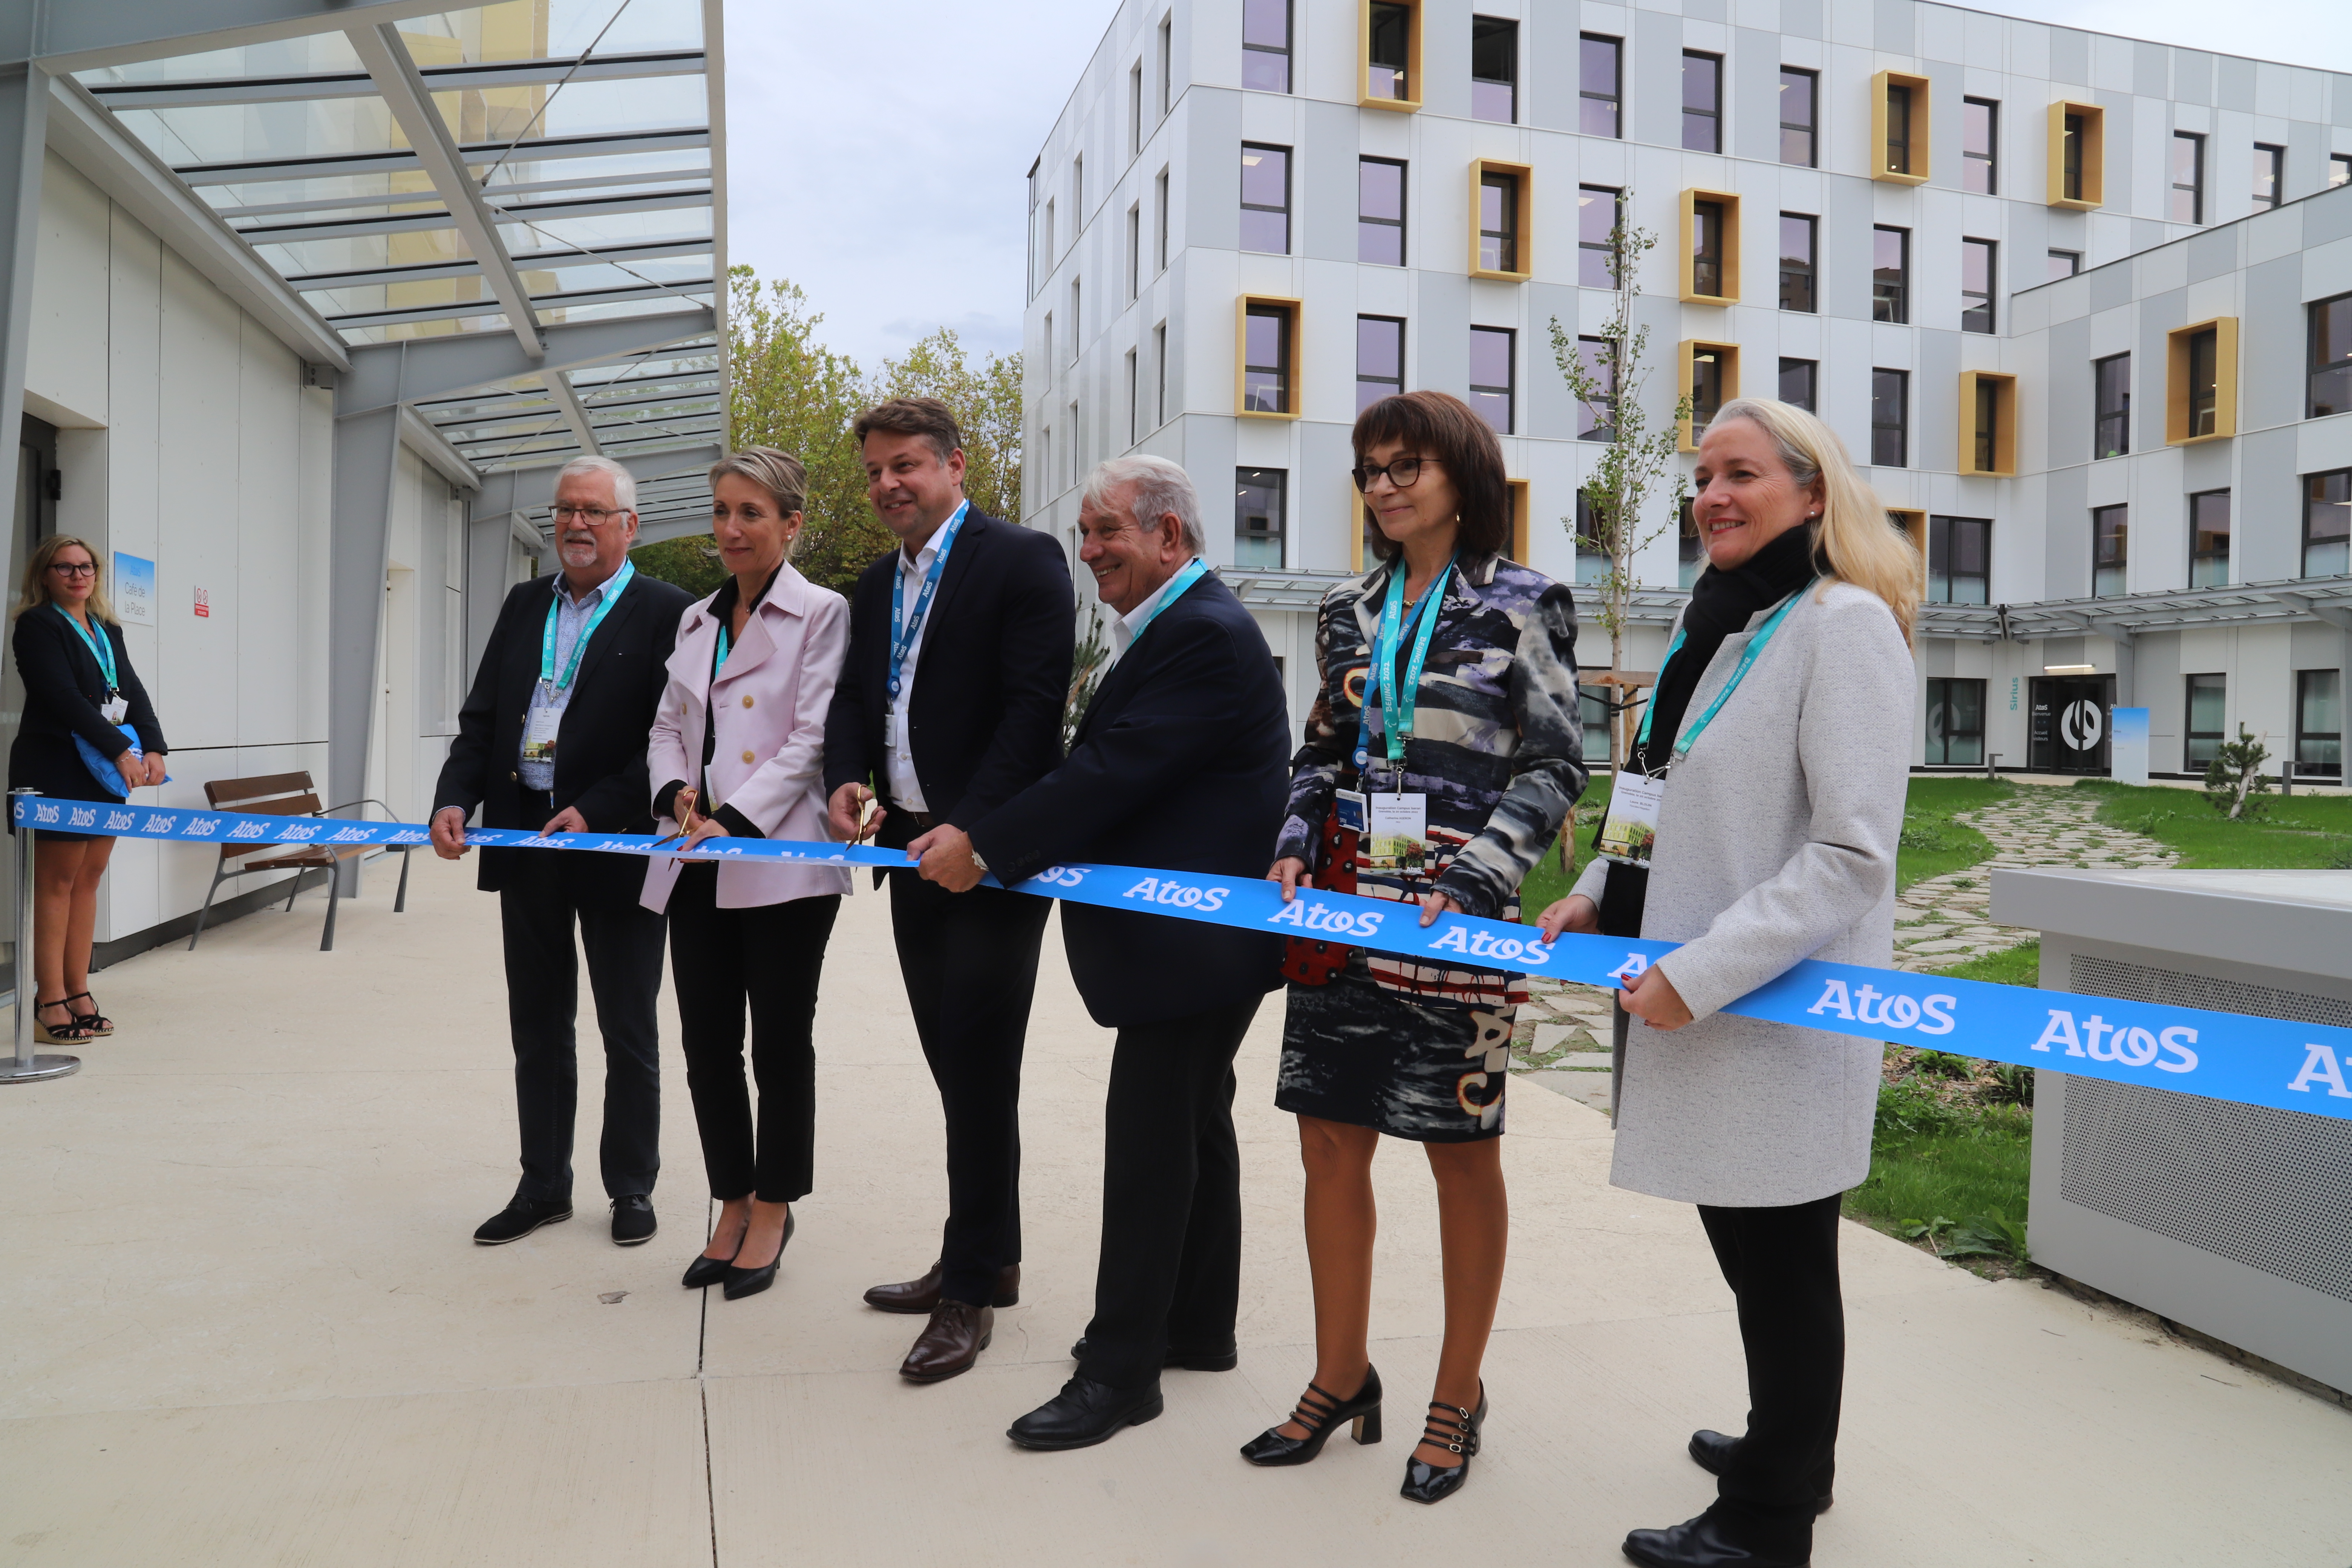 Renzo Sulli, aux côtés de Philippe Oliva, Guy Jullien, Catherine Staron, Catherine Ageron, et Laure Blouin, a inauguré le campus Iseran d'Atos.